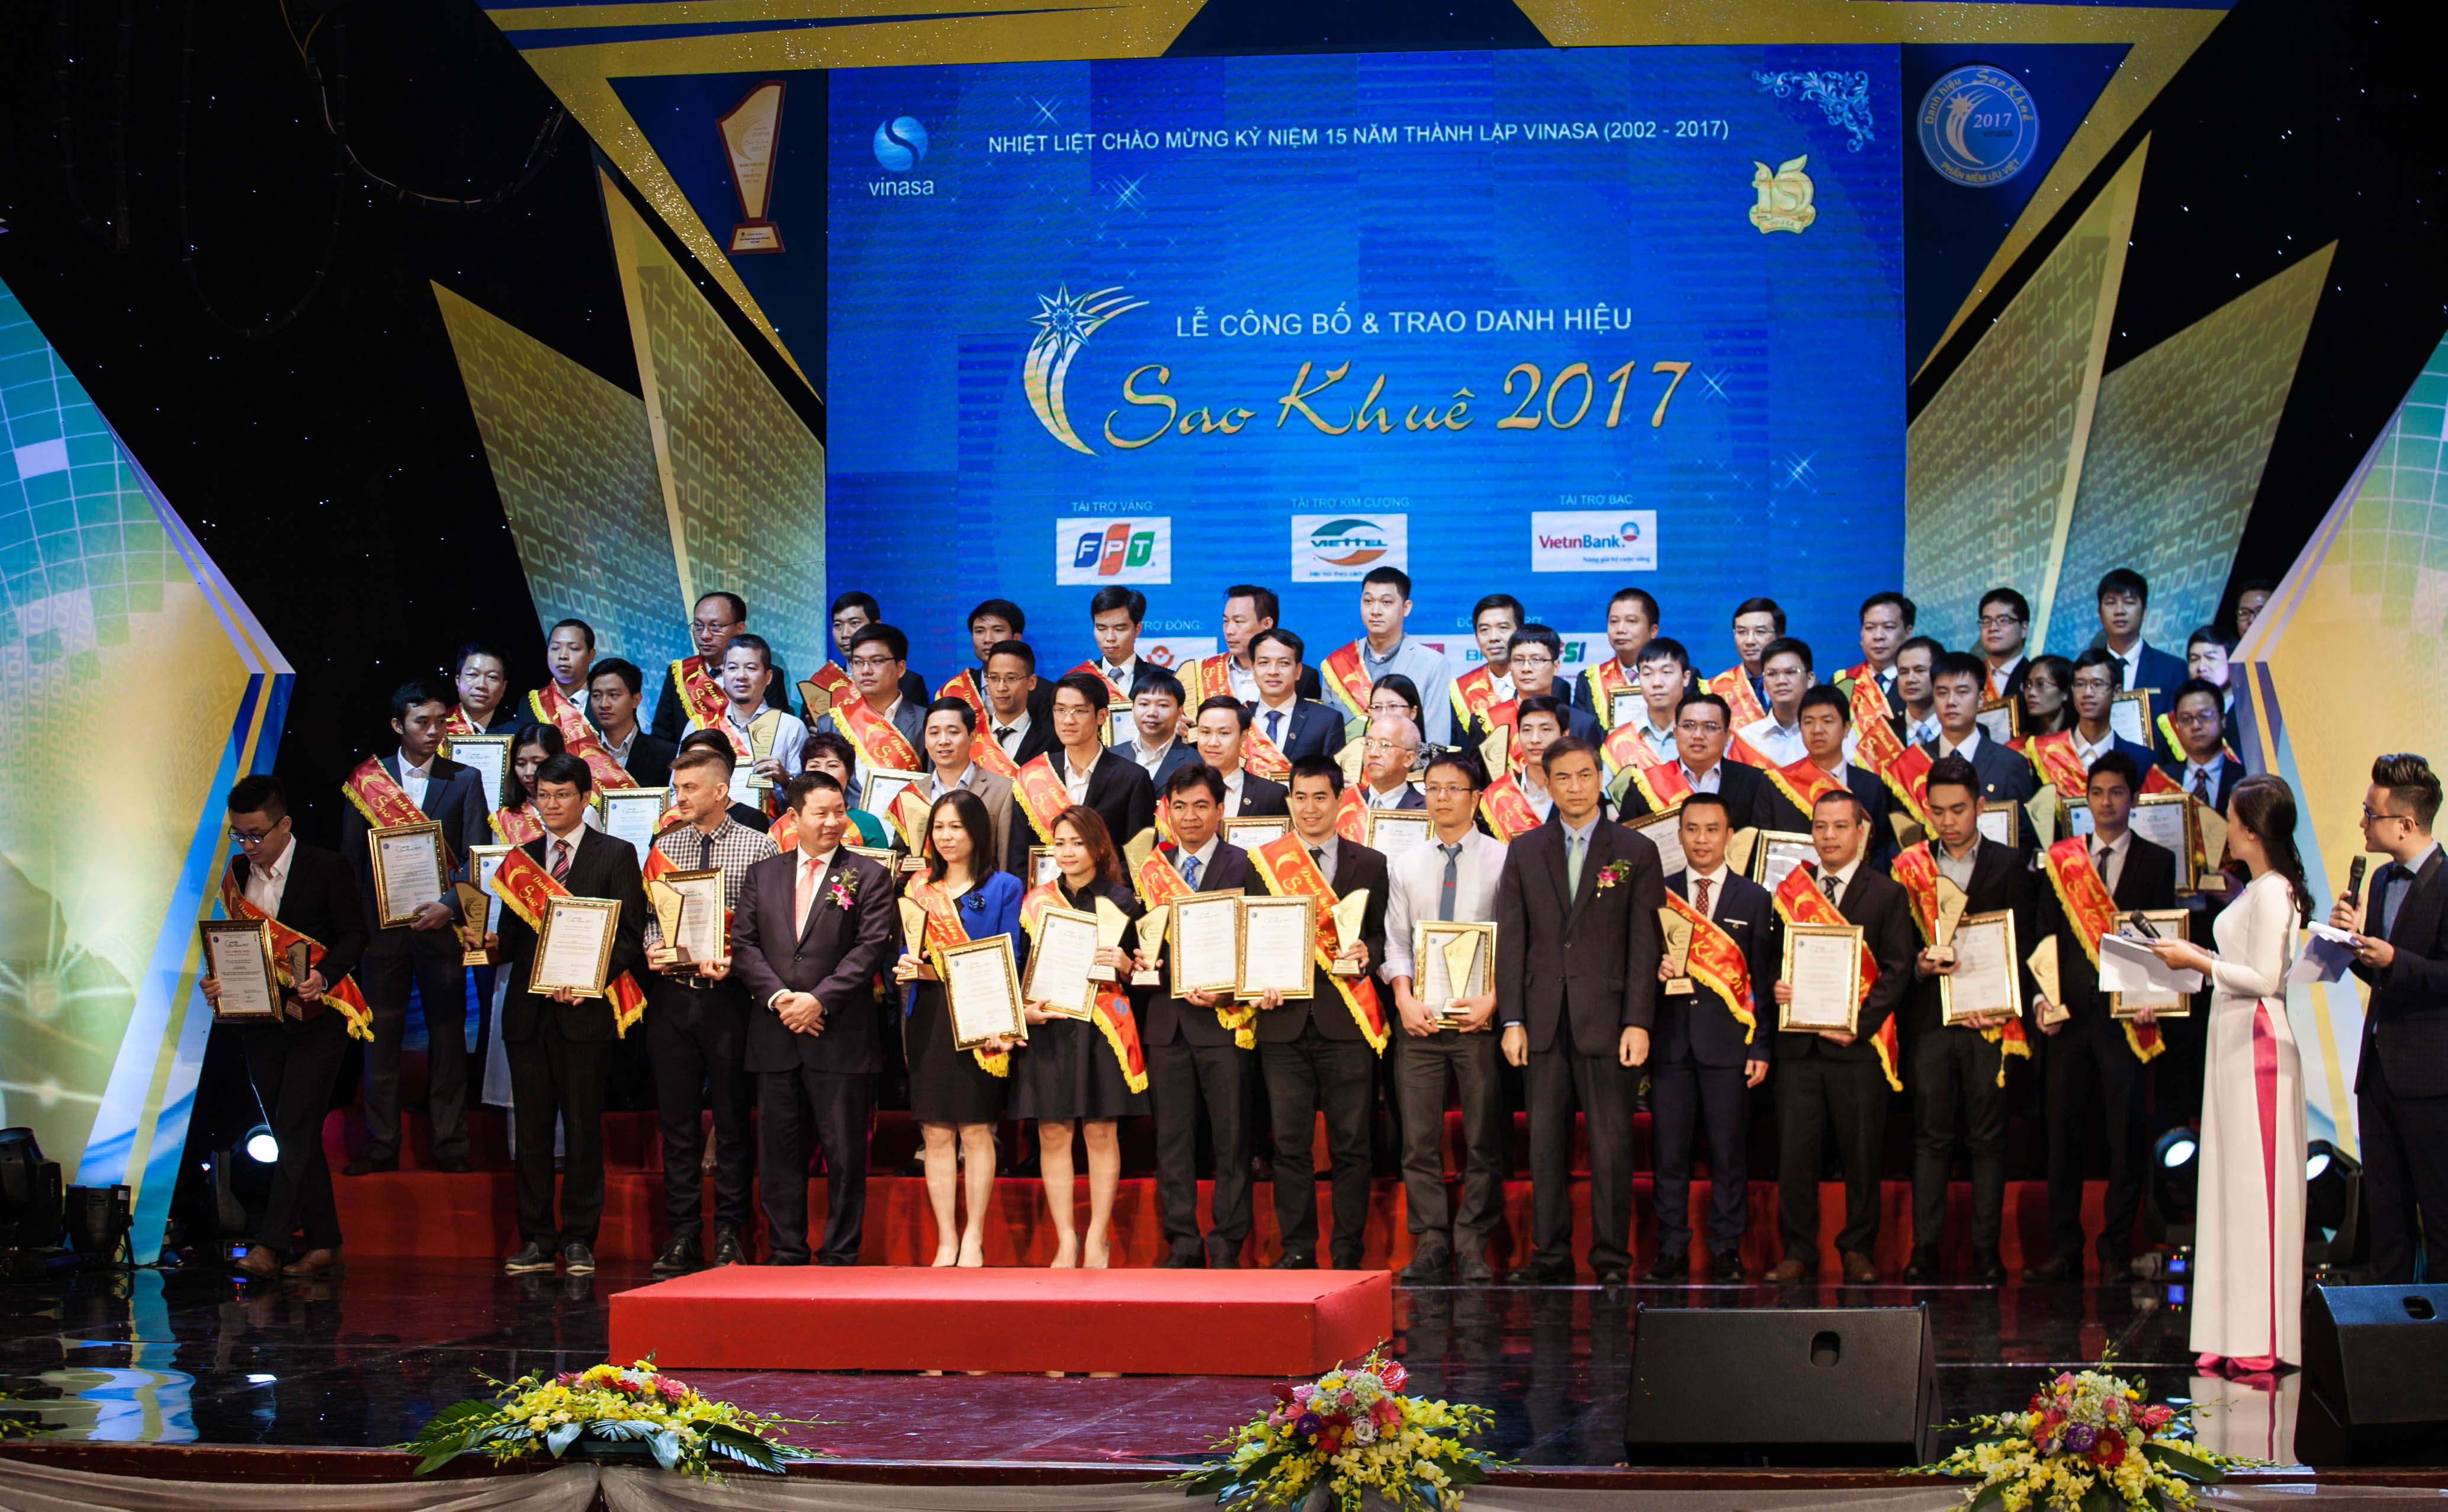 Tổ chức Giáo dục FPT nhận danh hiệu Sao Khuê 2017